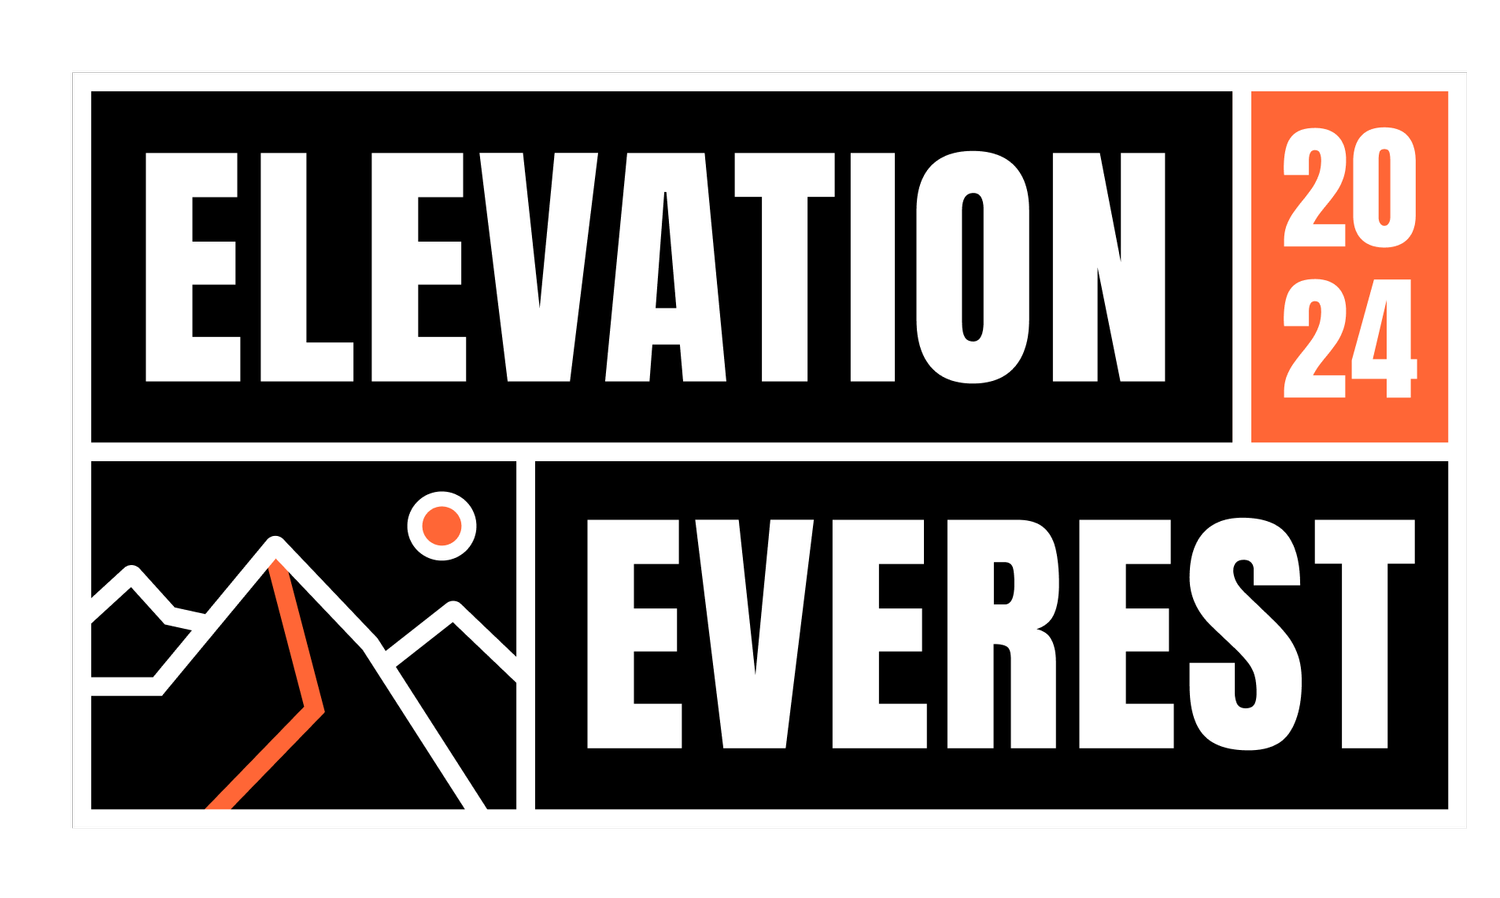 Elevation Everest